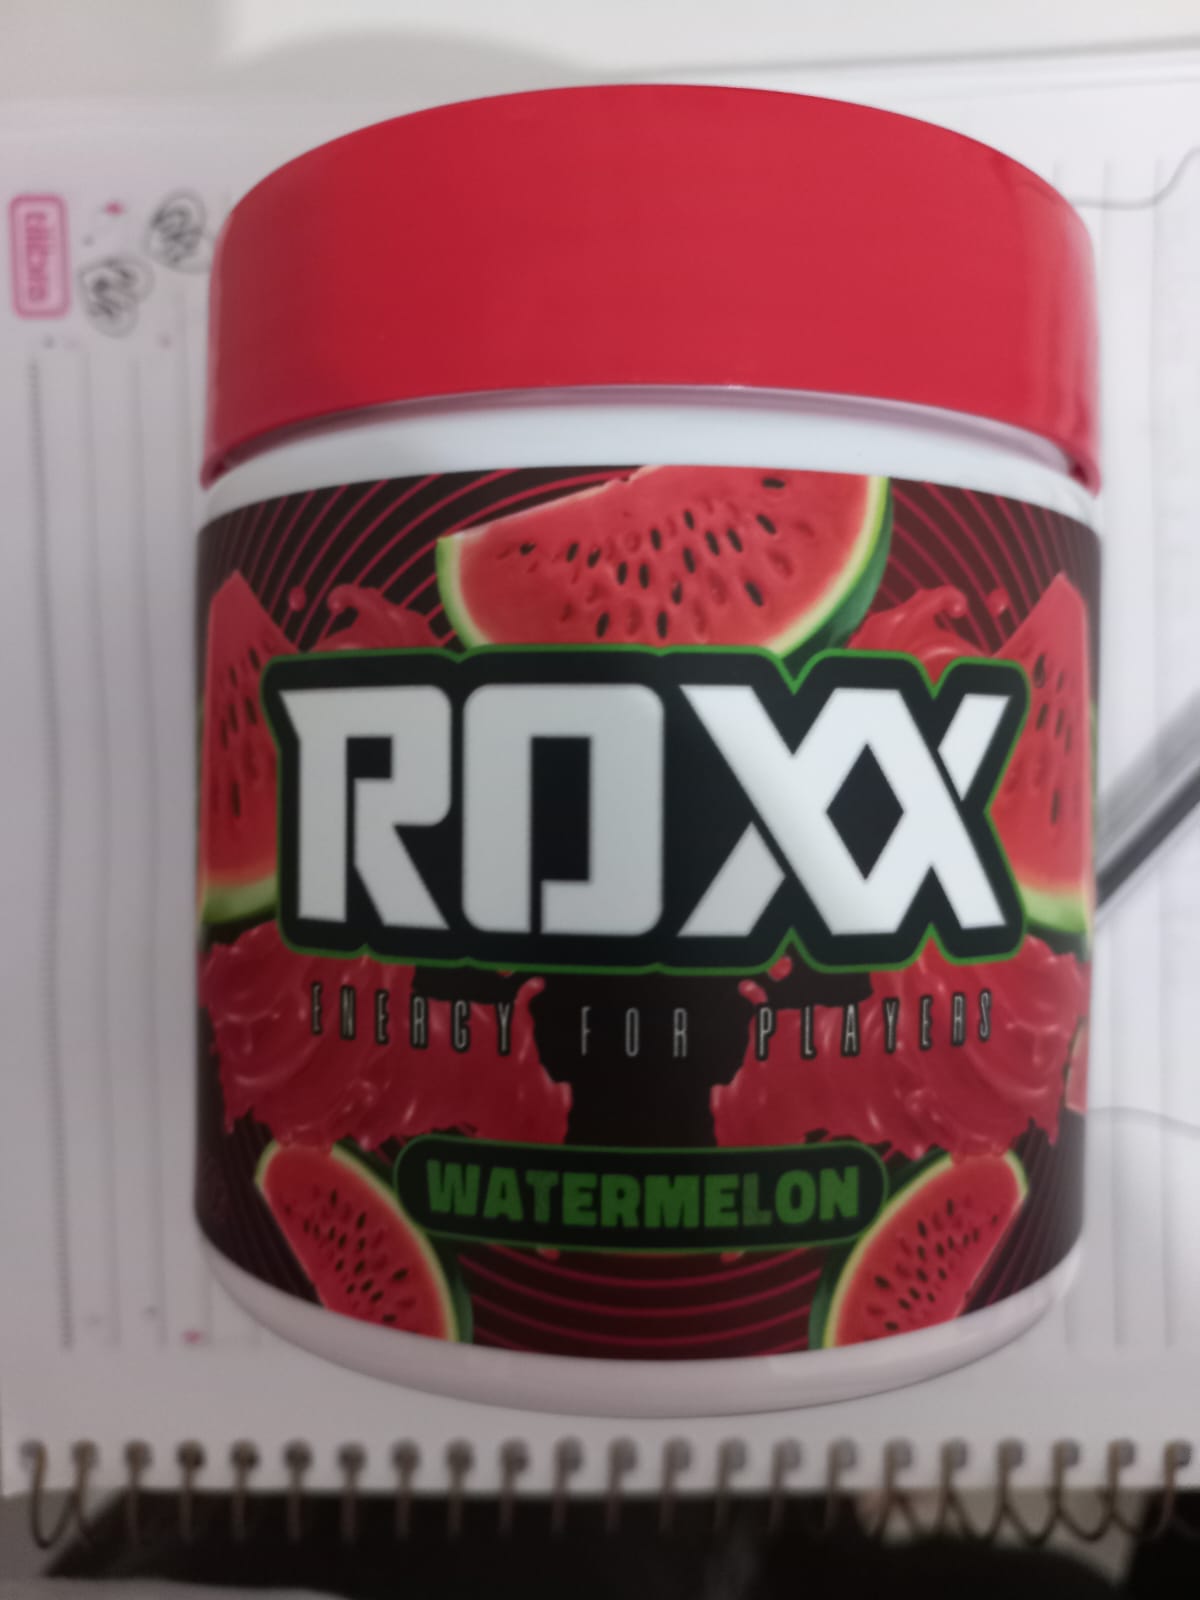 🔥 Bebendo Roxx energy junto com o nss querido e lindíssim